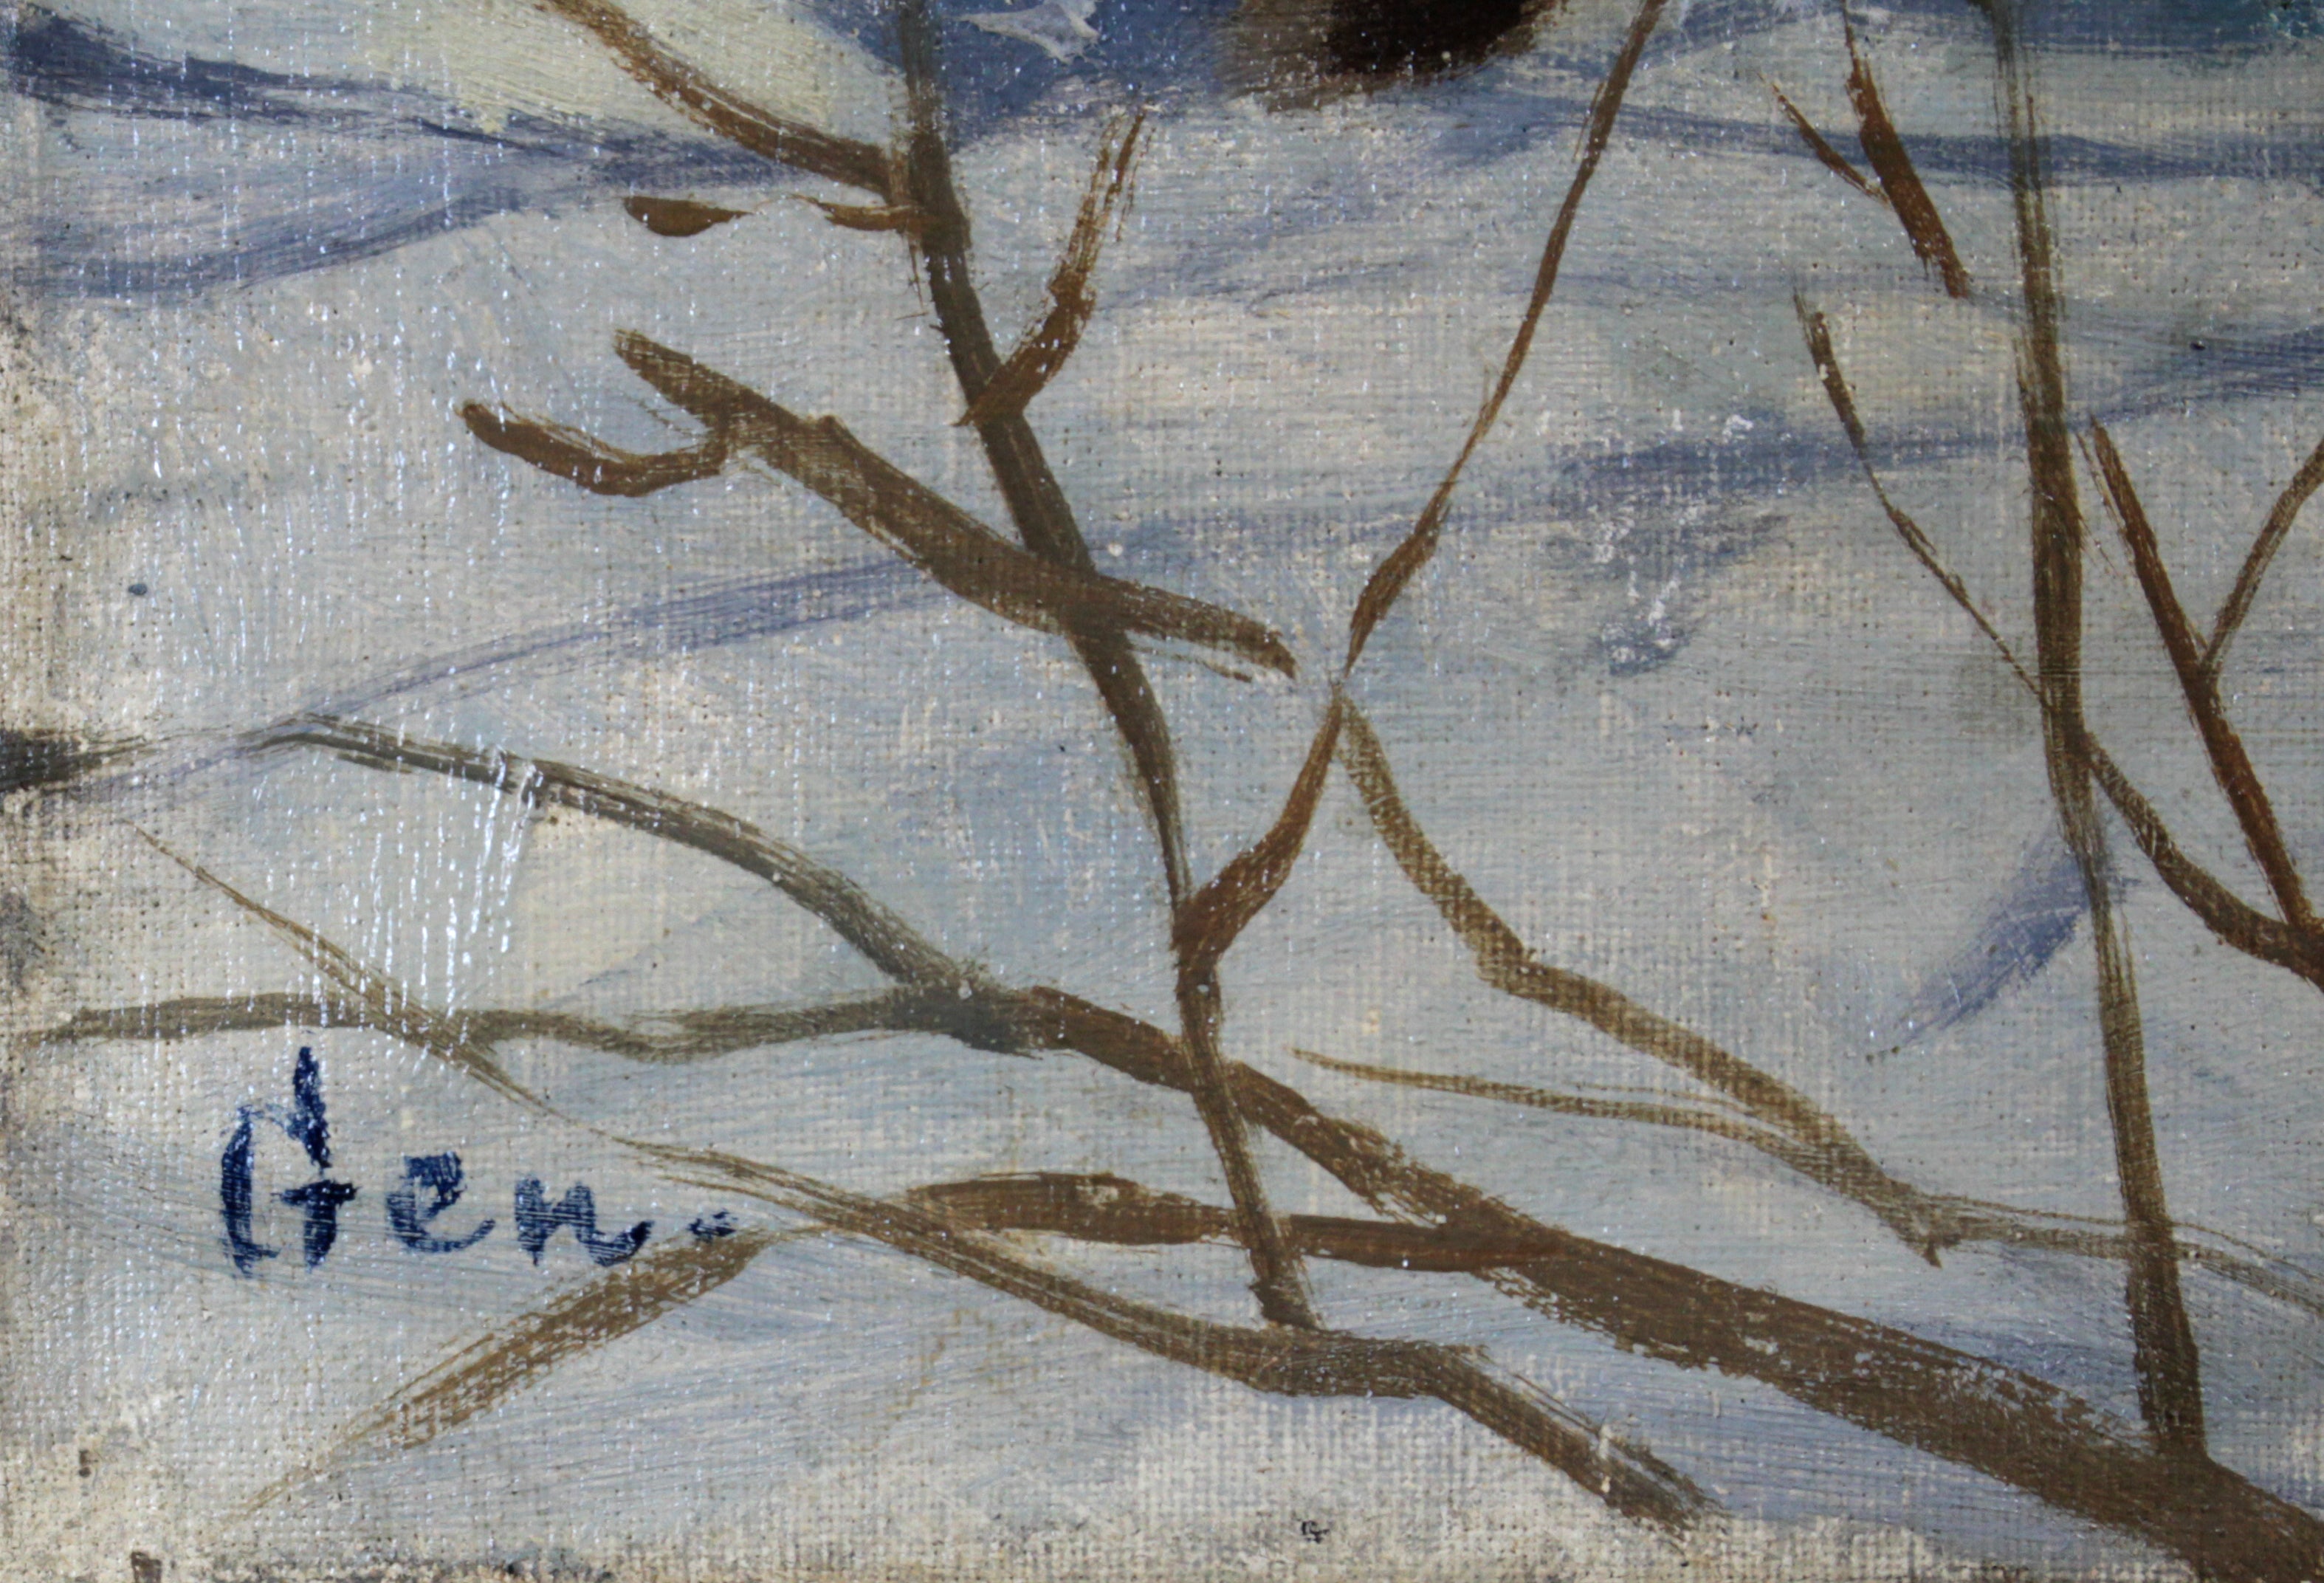 大月源二 『白樺のある雪景』 油彩画 - 北海道画廊